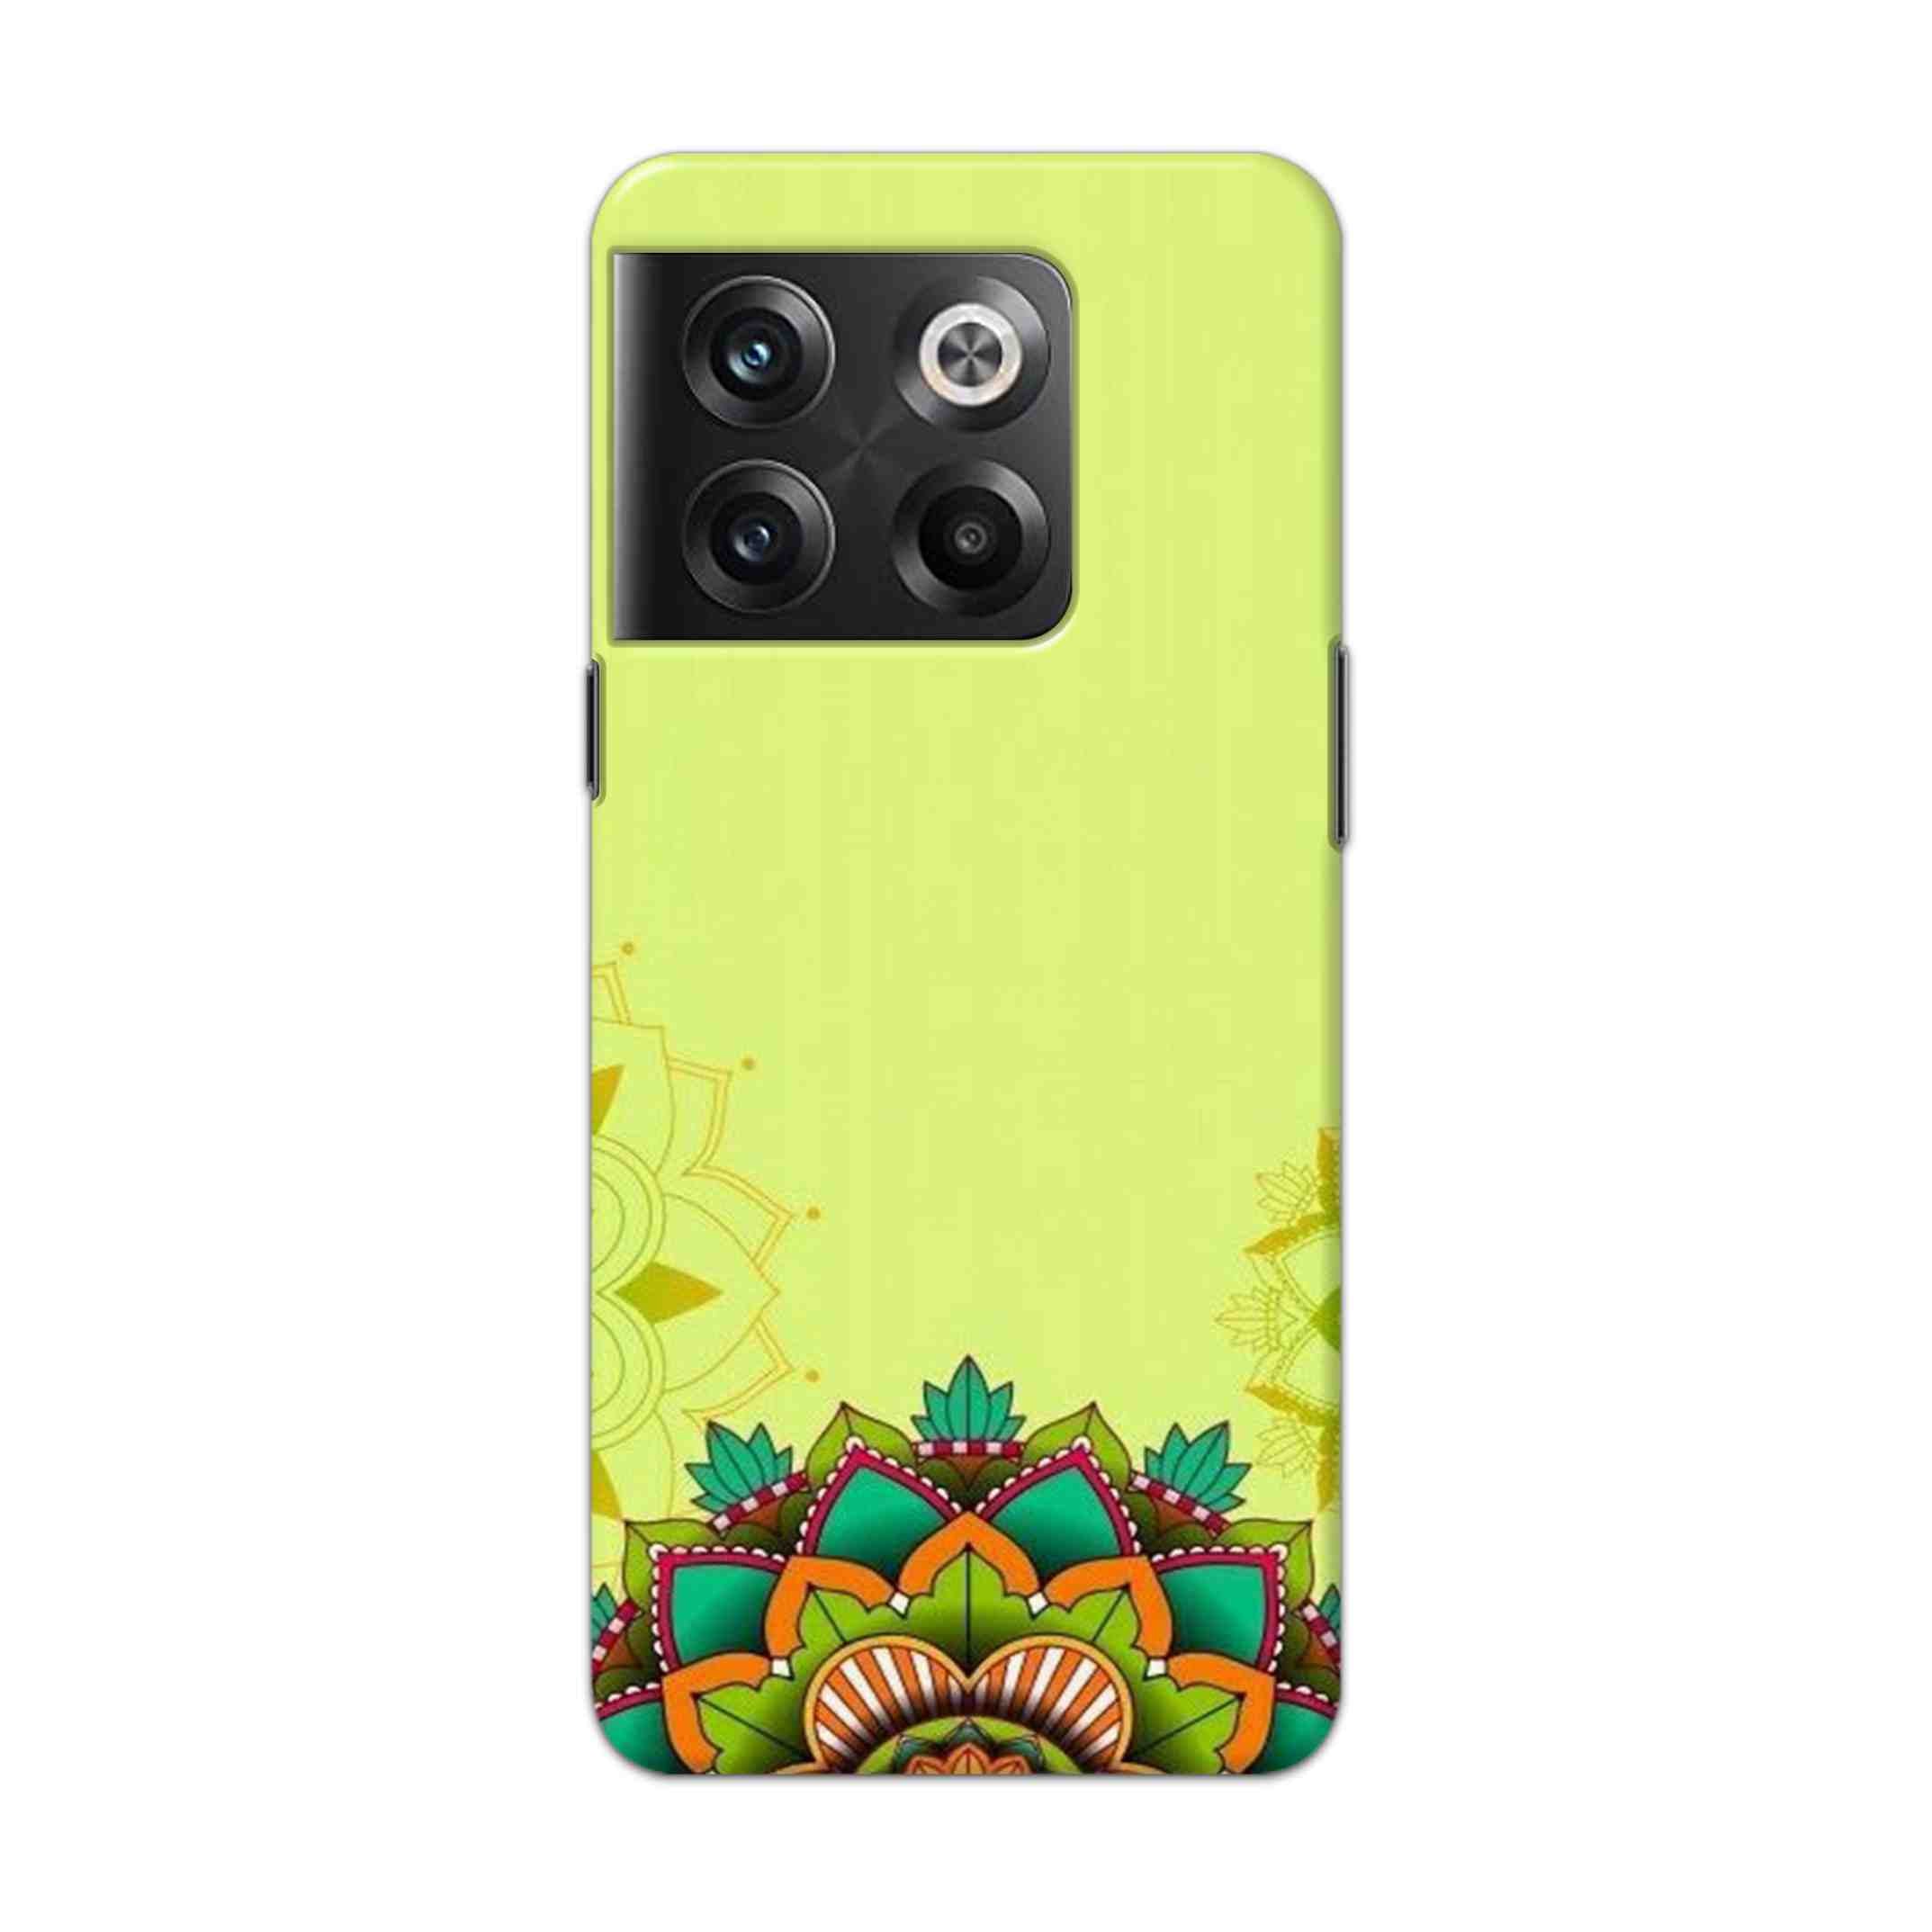 Buy Flower Mandala Hard Back Mobile Phone Case Cover For Oneplus 10T Online